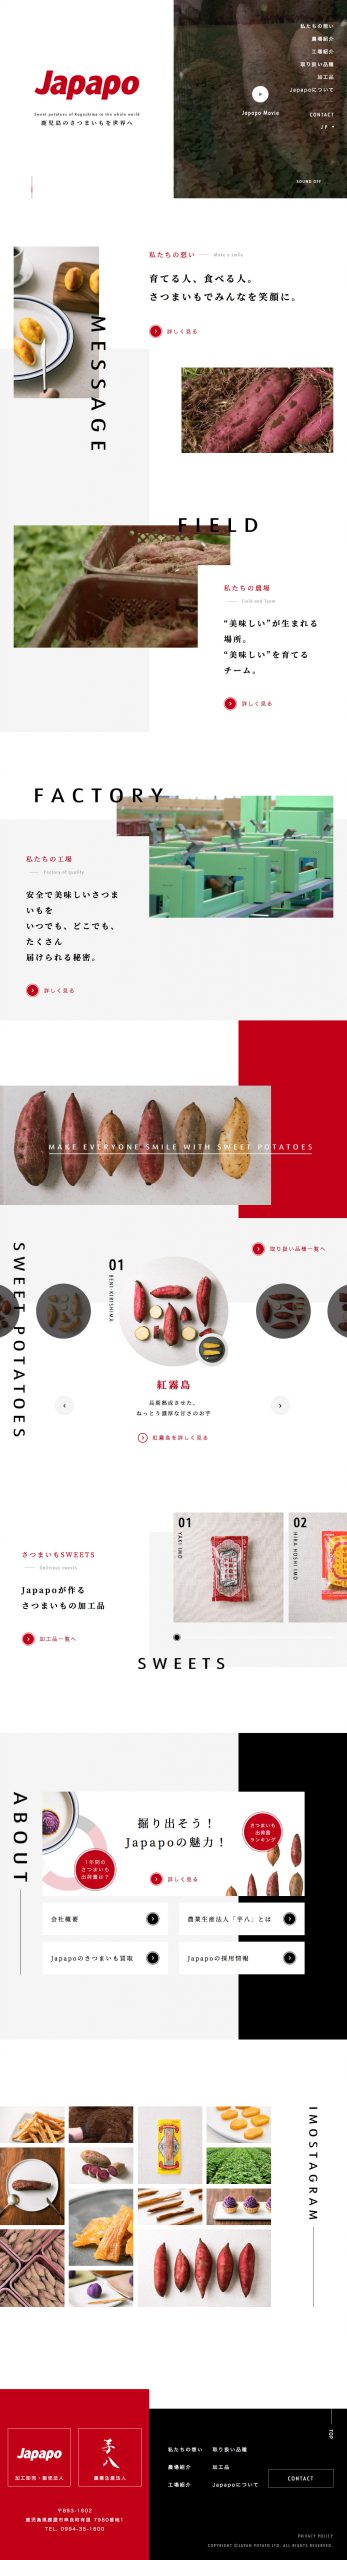 食品・飲料 コーポレートサイト制作 WEBデザイン参考ギャラリー Japan potato有限会社